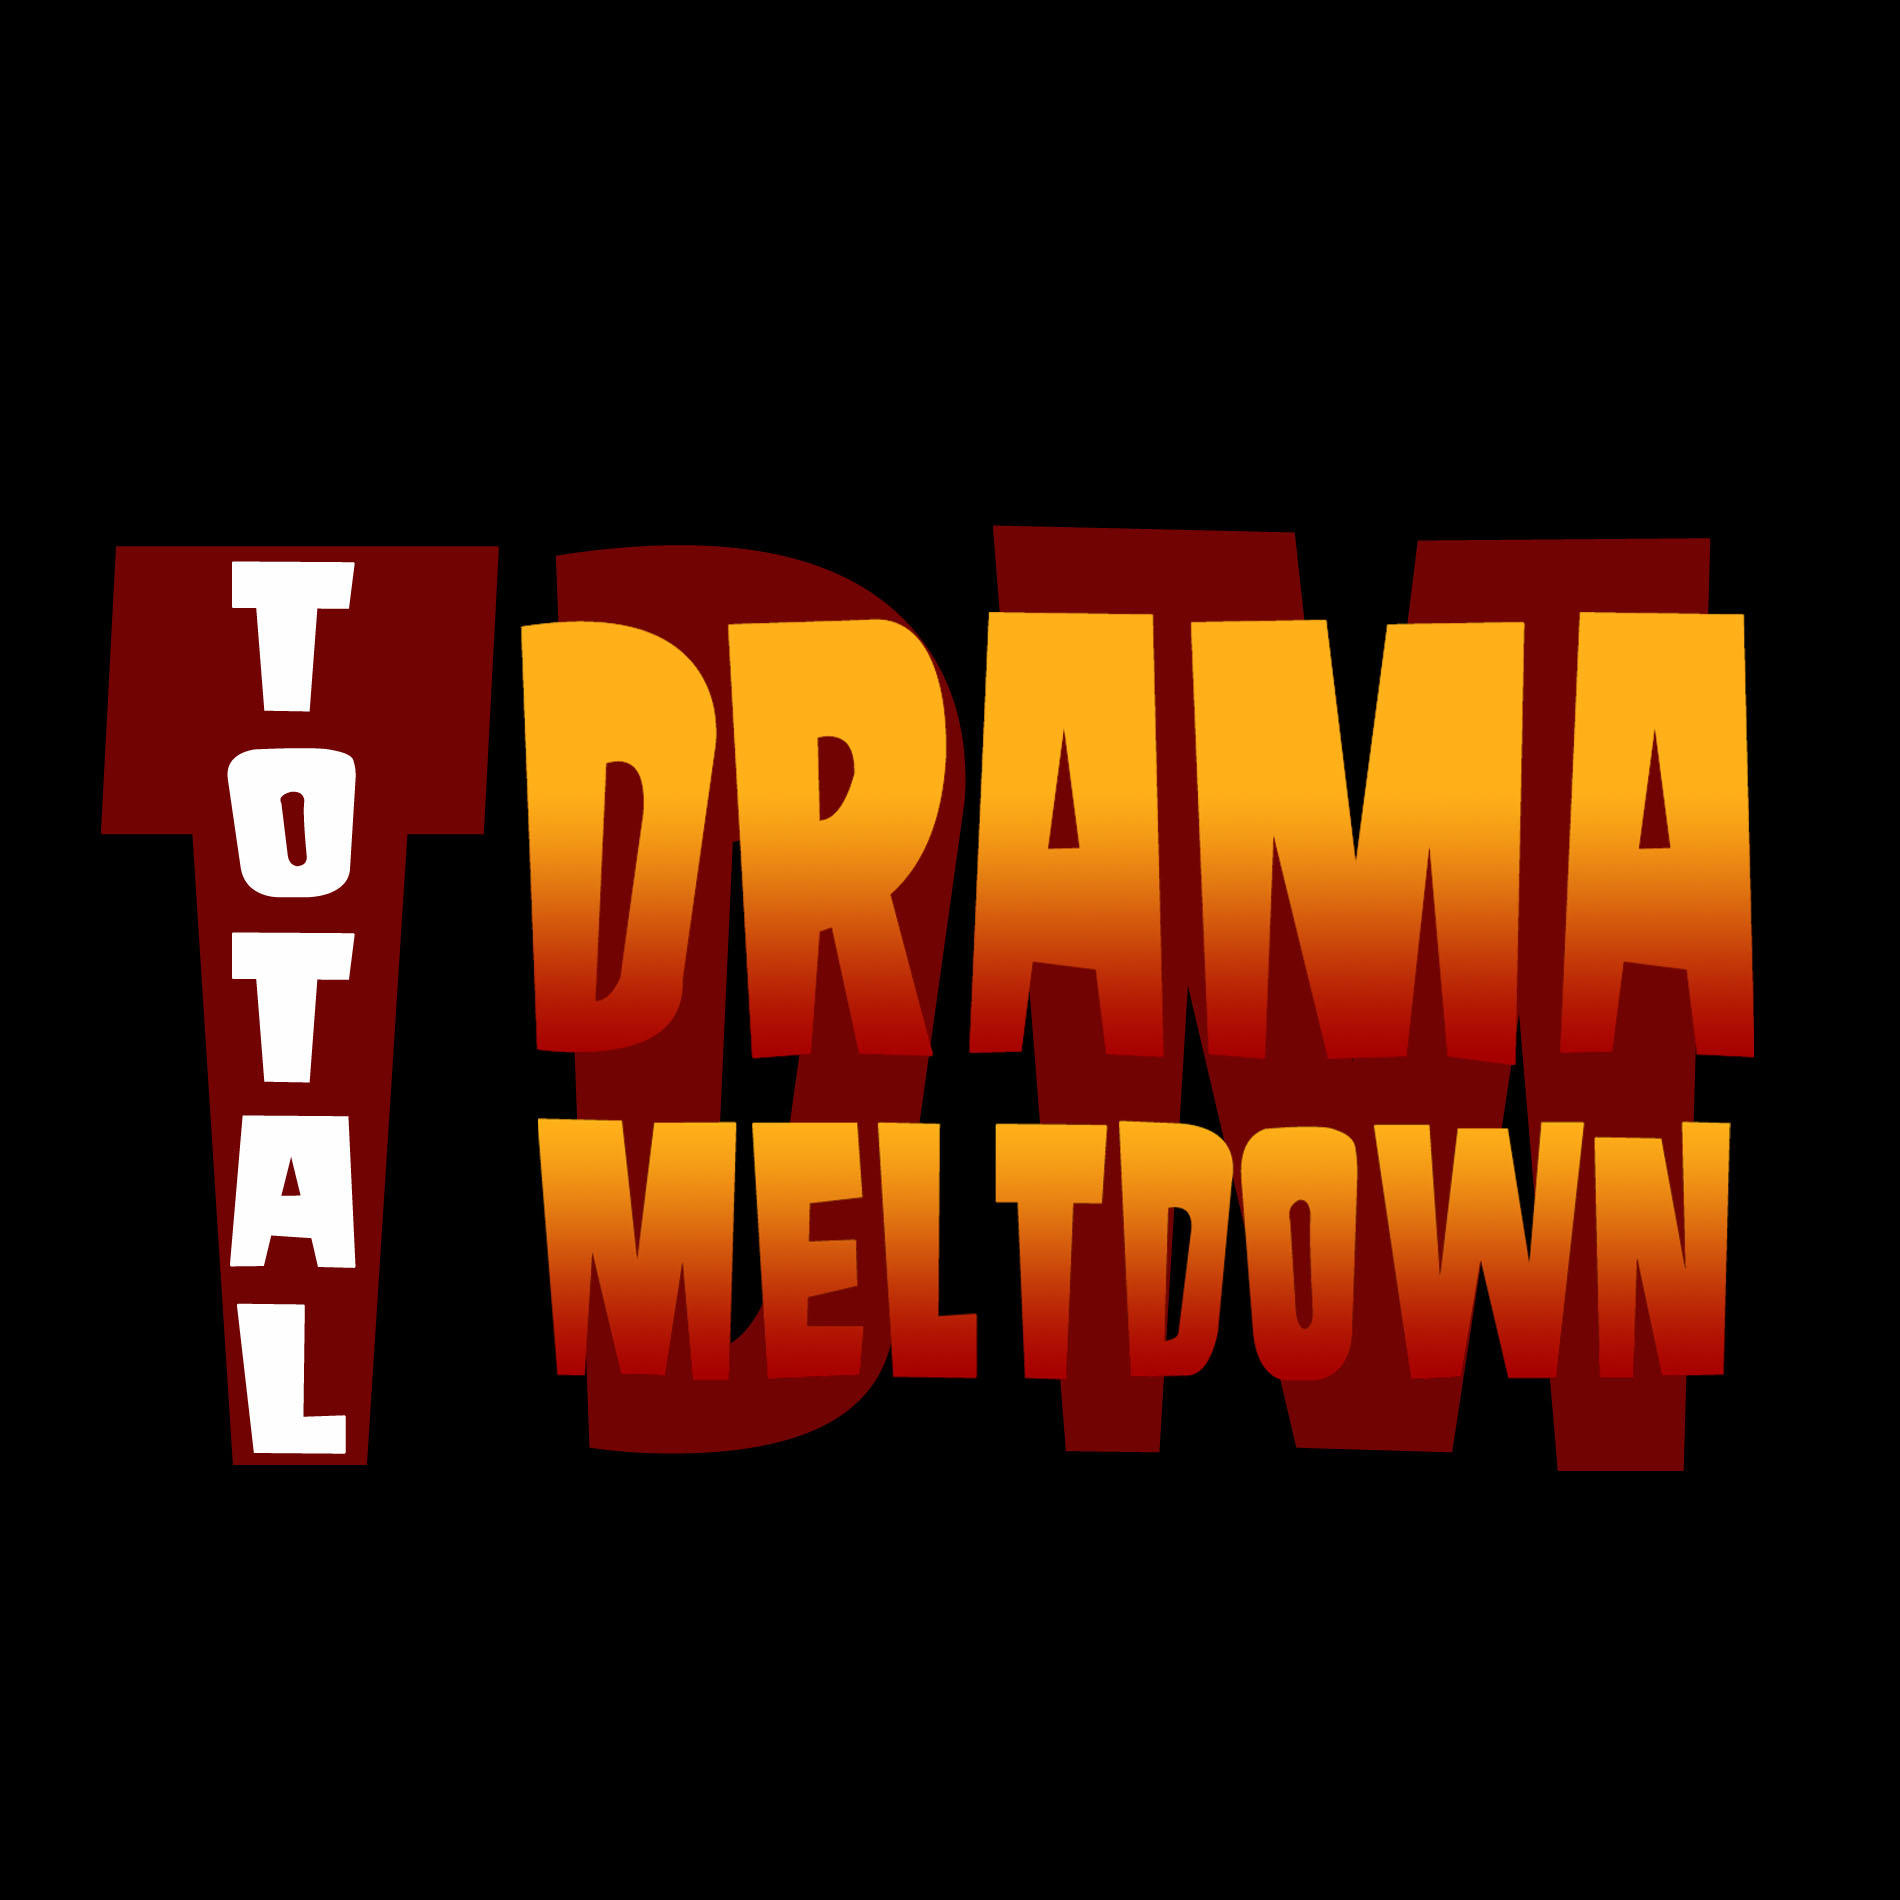 Total_Drama_Meltdown_Part_1_by_vonmatrix5000.jpg